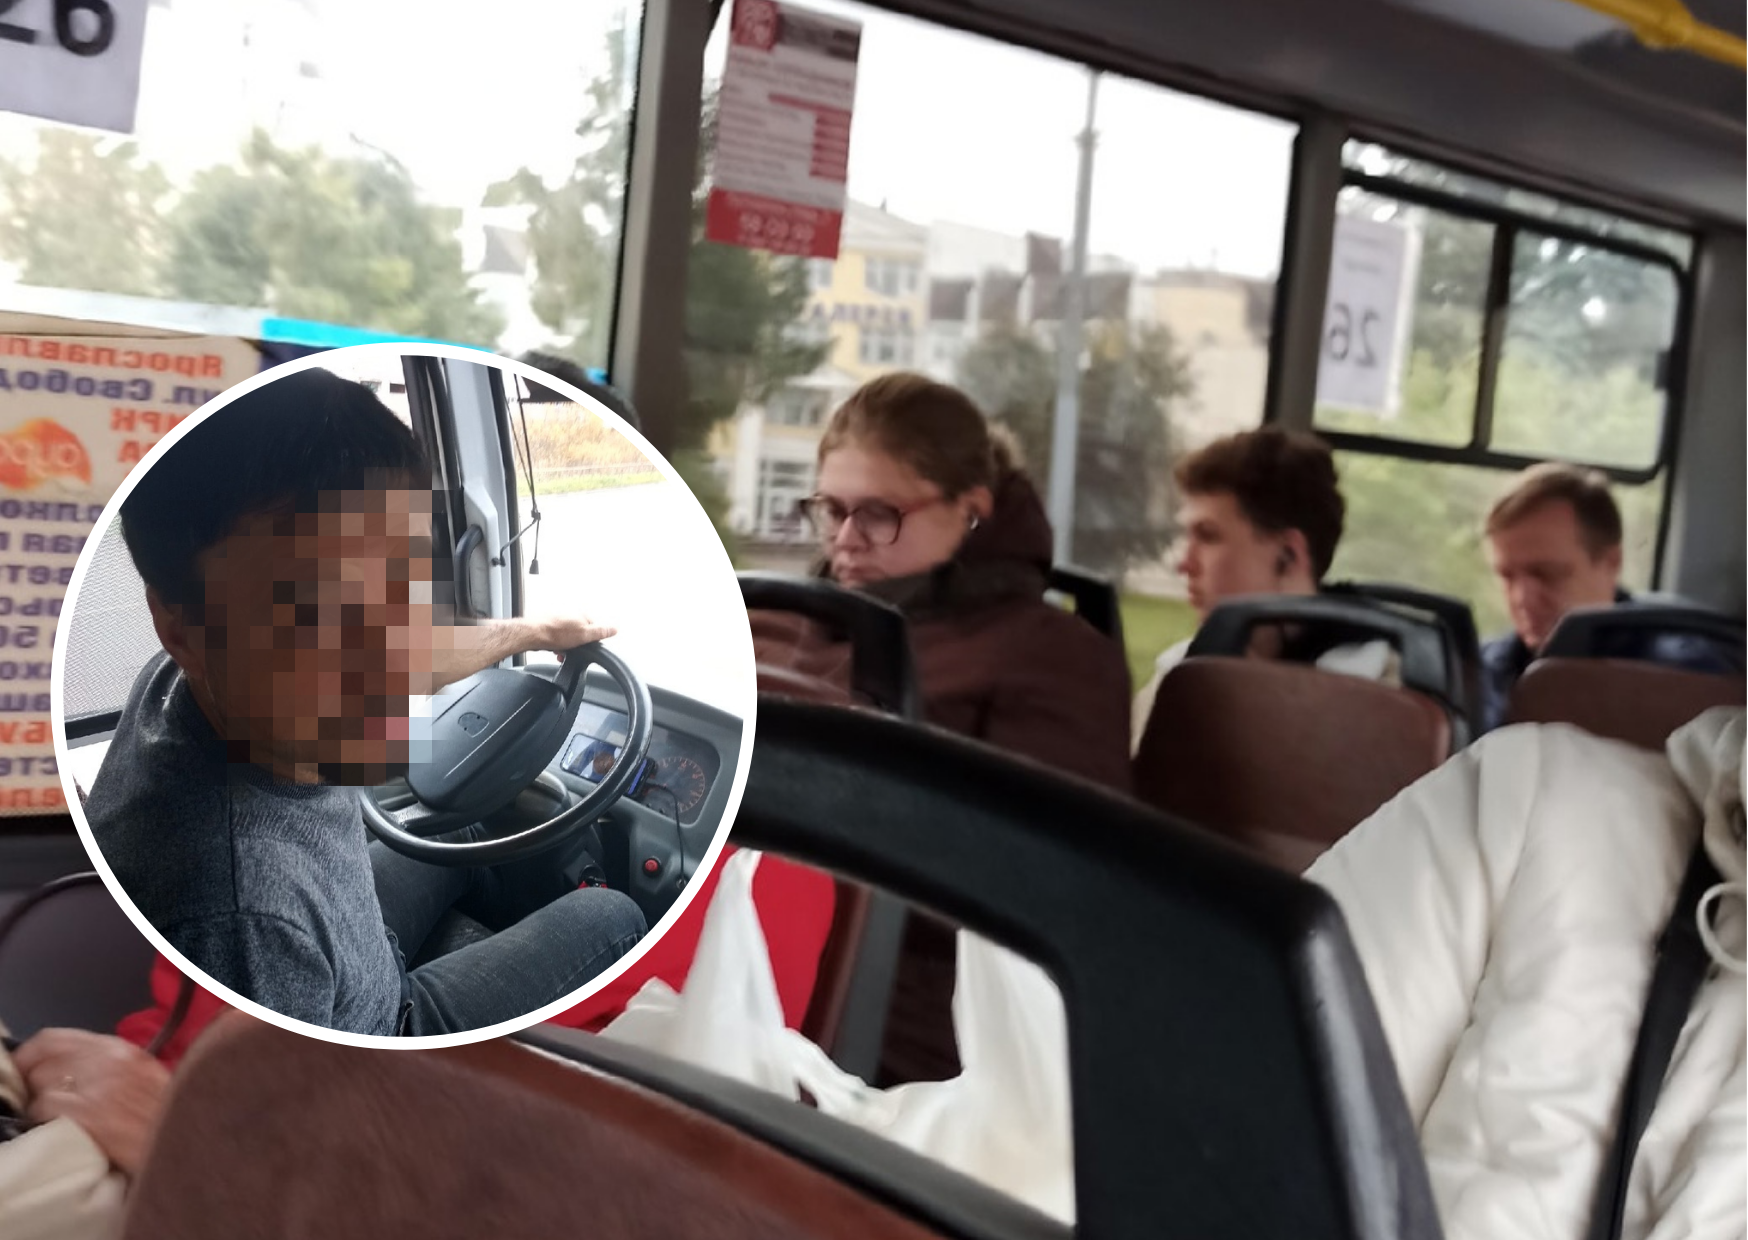 «Требует оплатить наличкой или выйти»: ярославцы массово жалуются на водителя маршрутки 